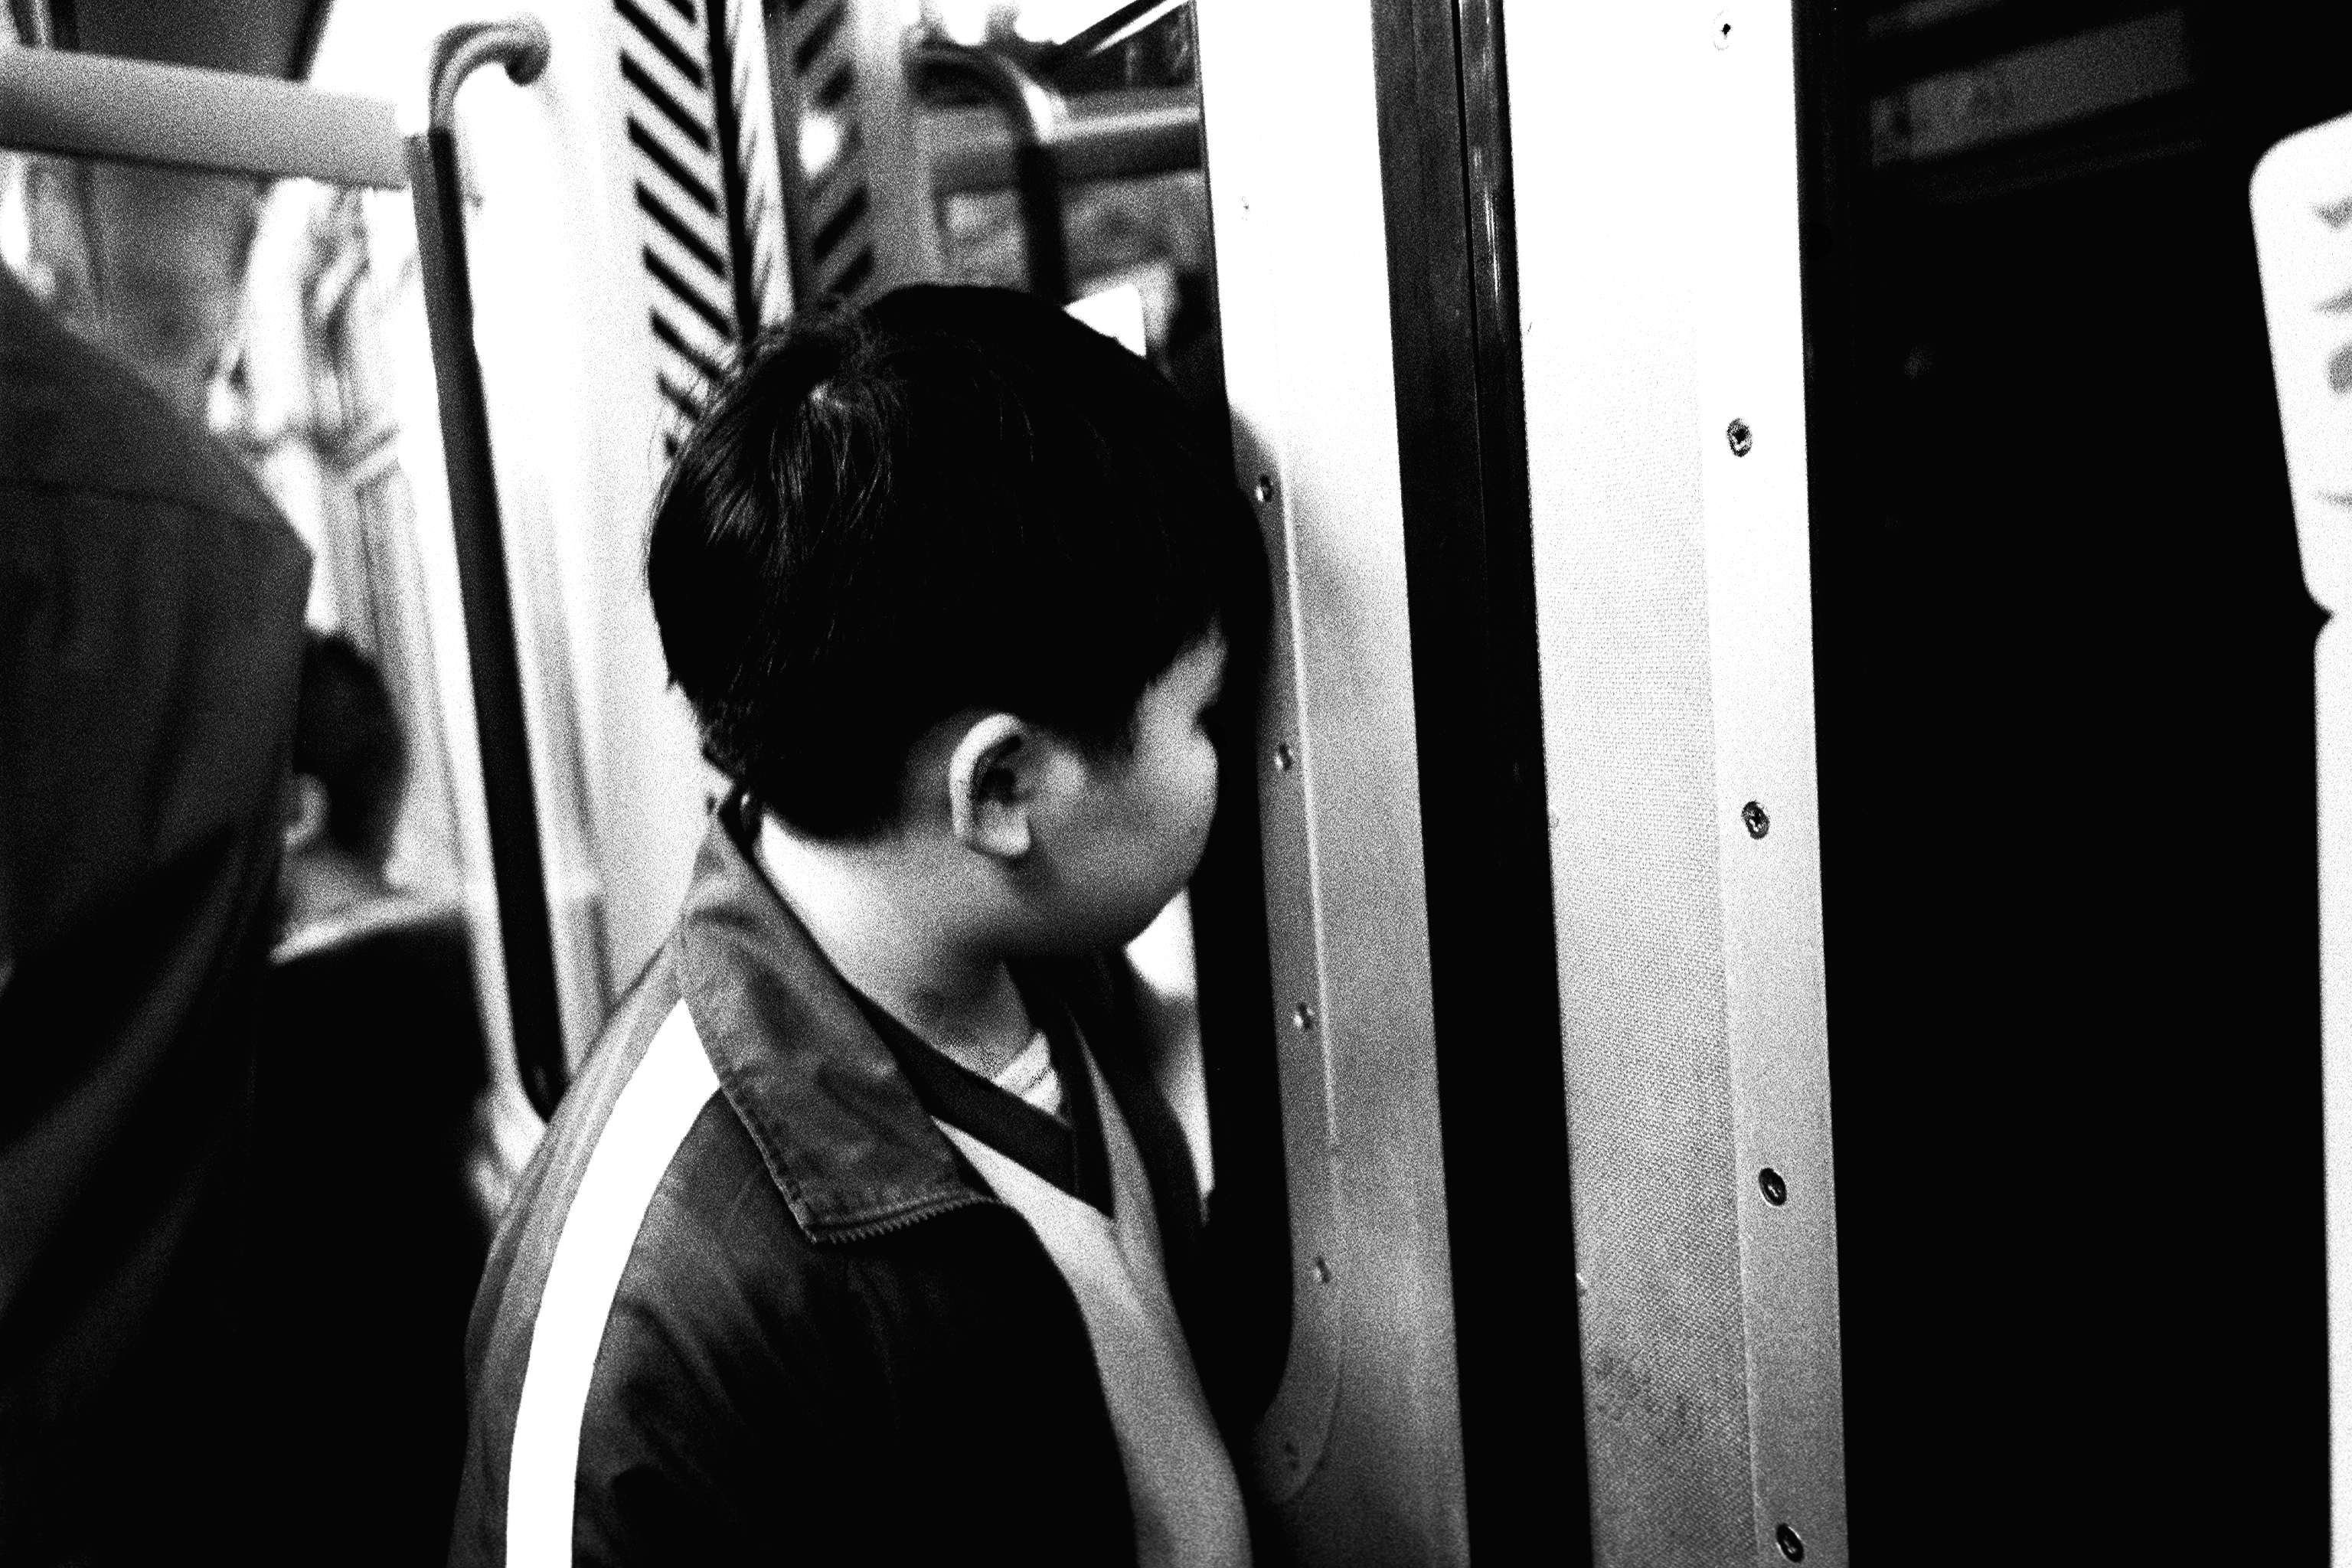 Kid at MTR